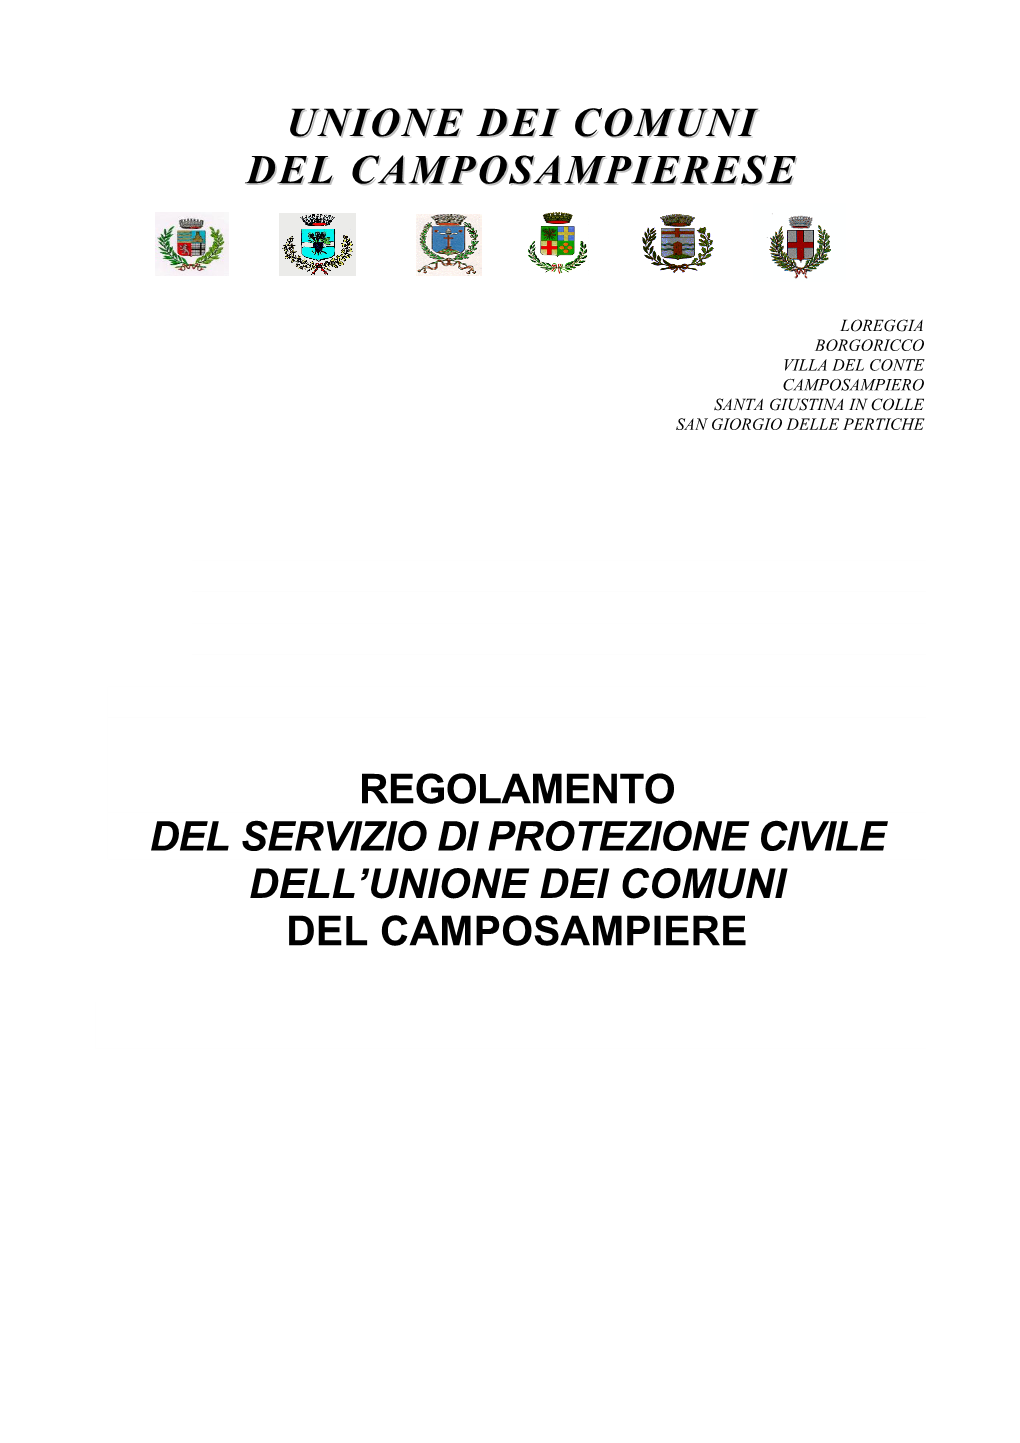 Regolamento Del Servizio Di Protezione Civile Dell'unione Dei Comuni Del